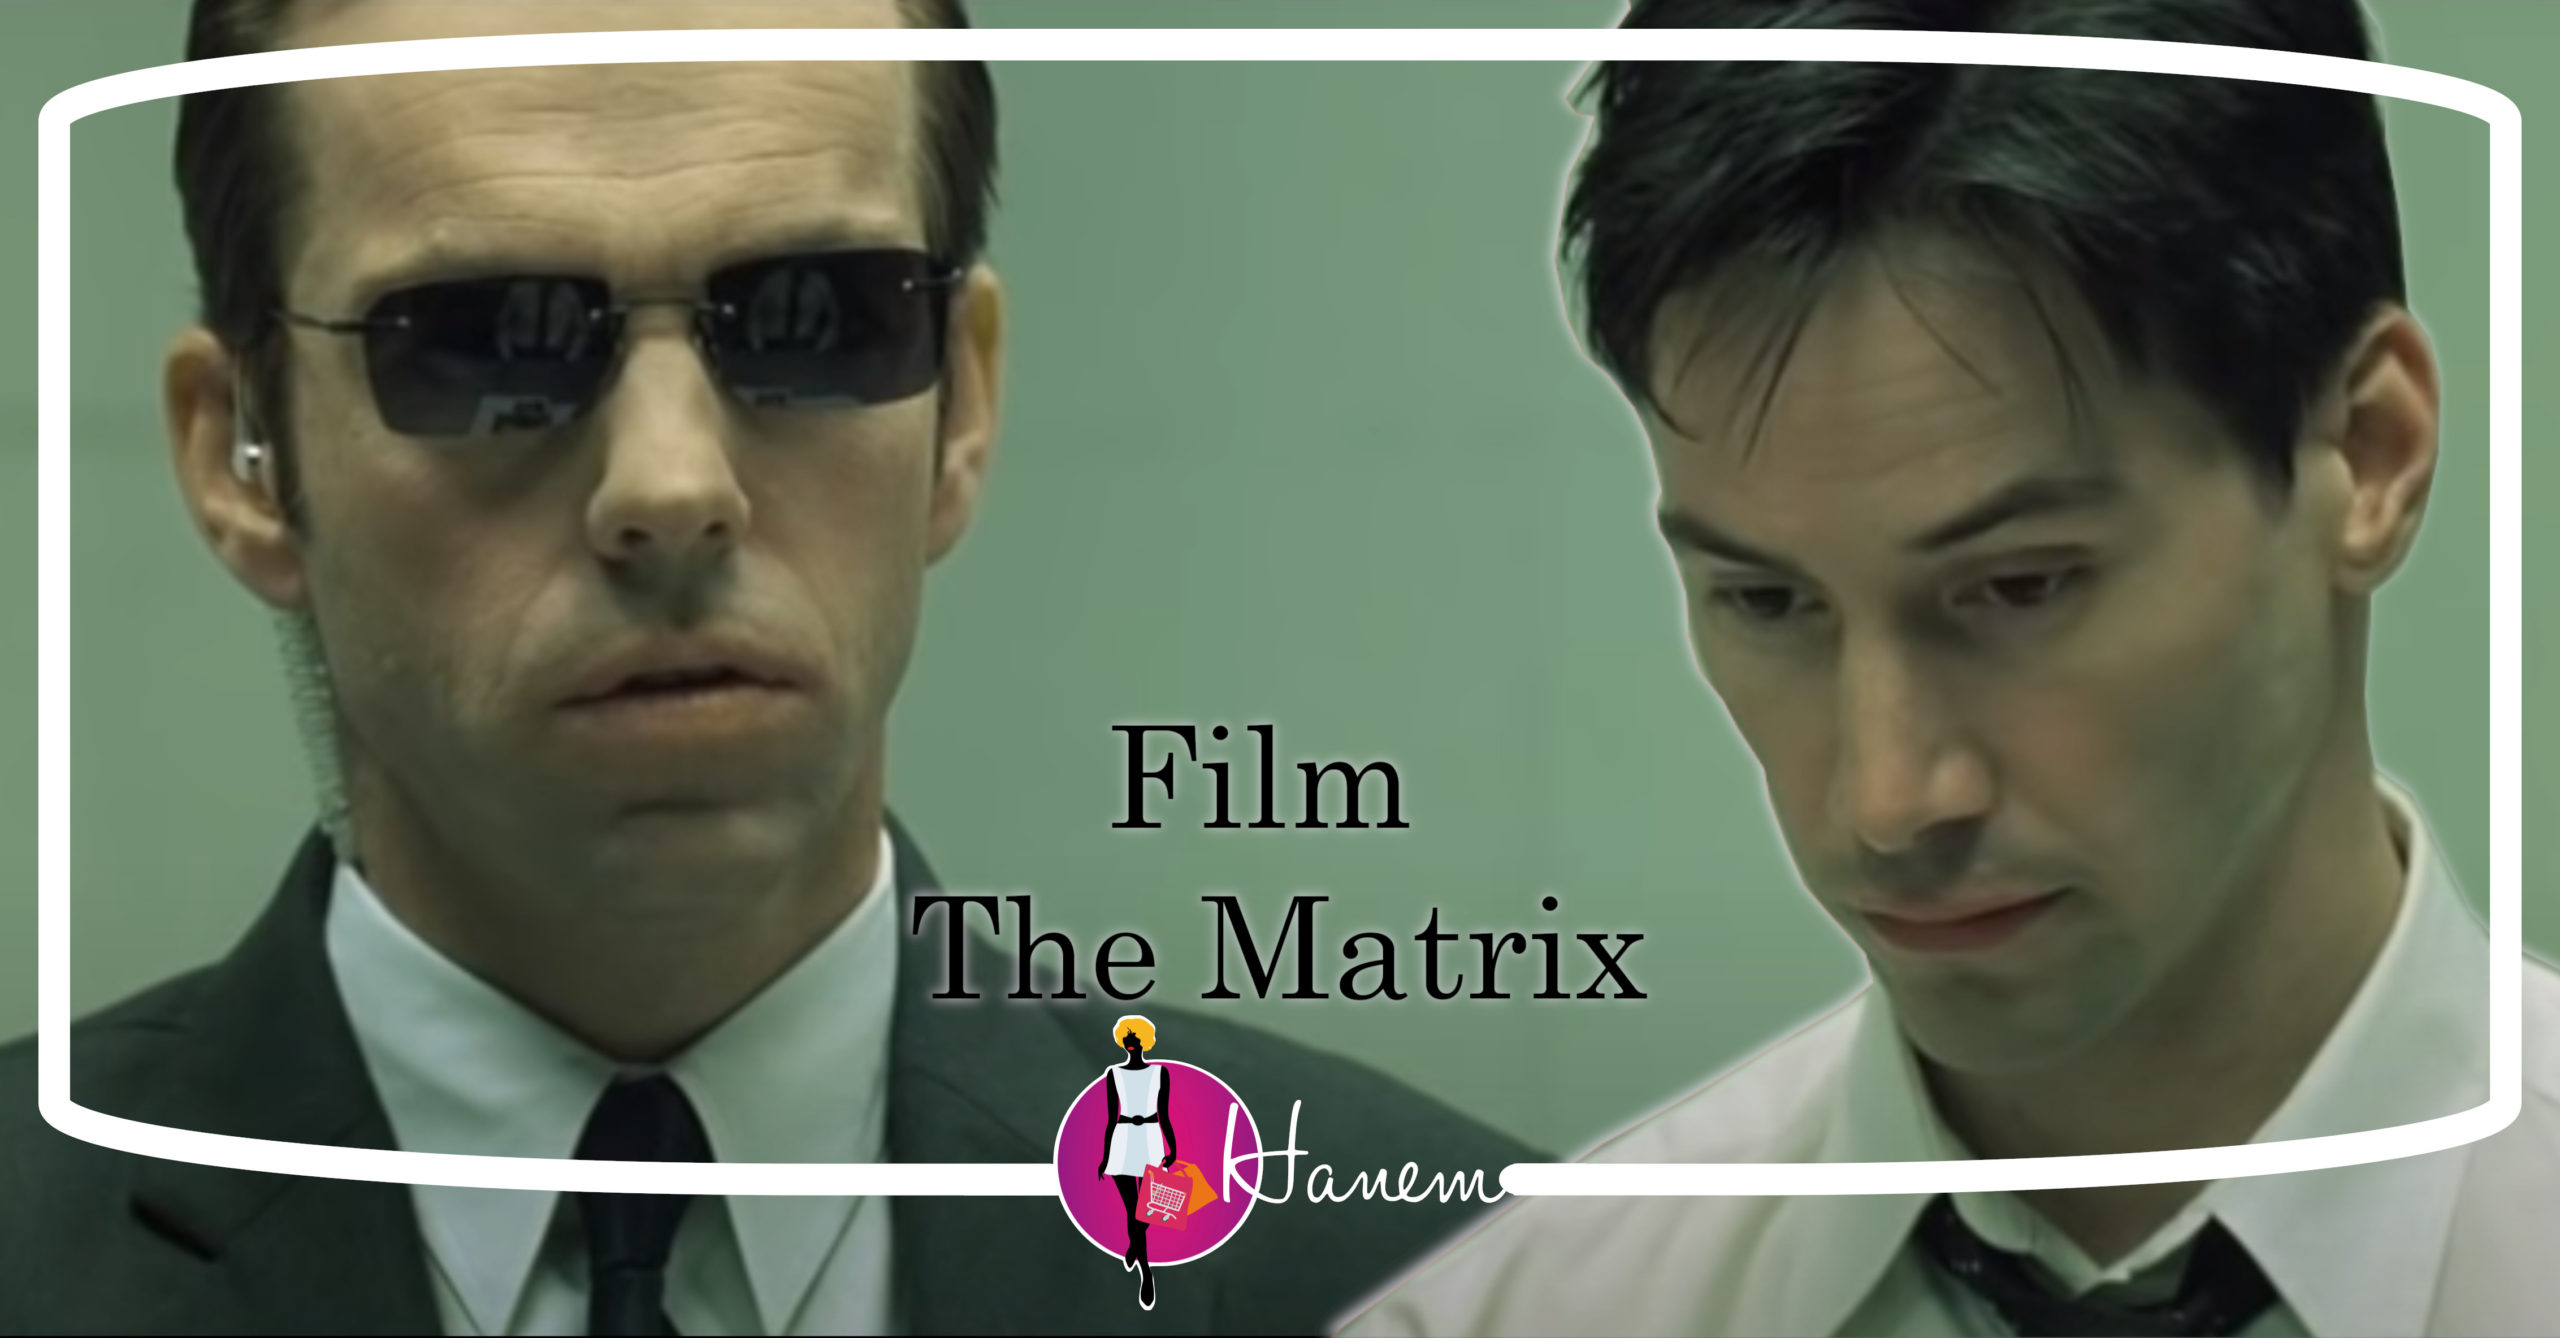 Film The Matrix Deux Vies